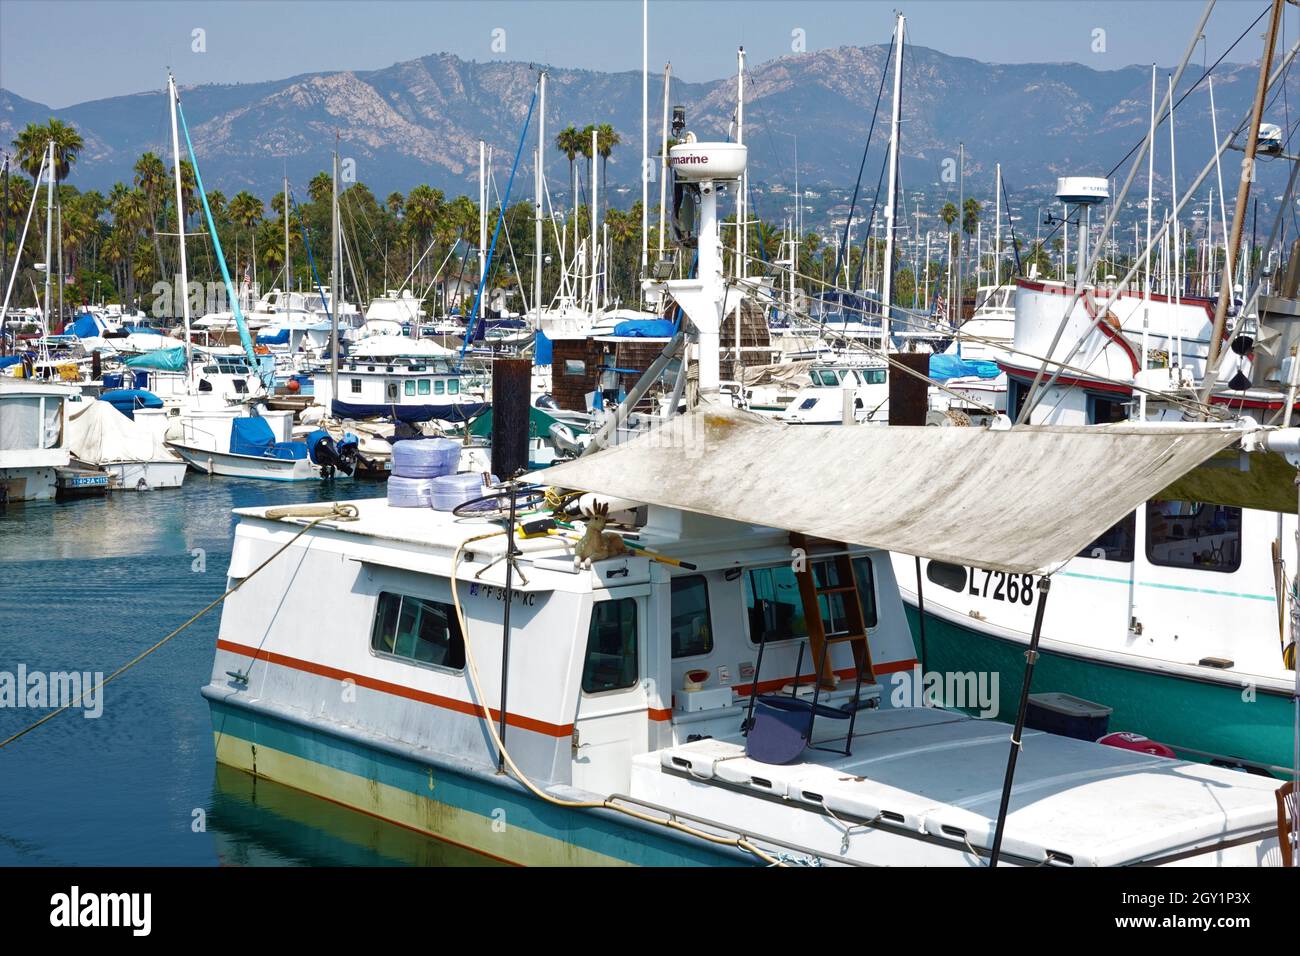 Santa Barbara Harbor on a lovely sunny summers day, California, USA Stock Photo